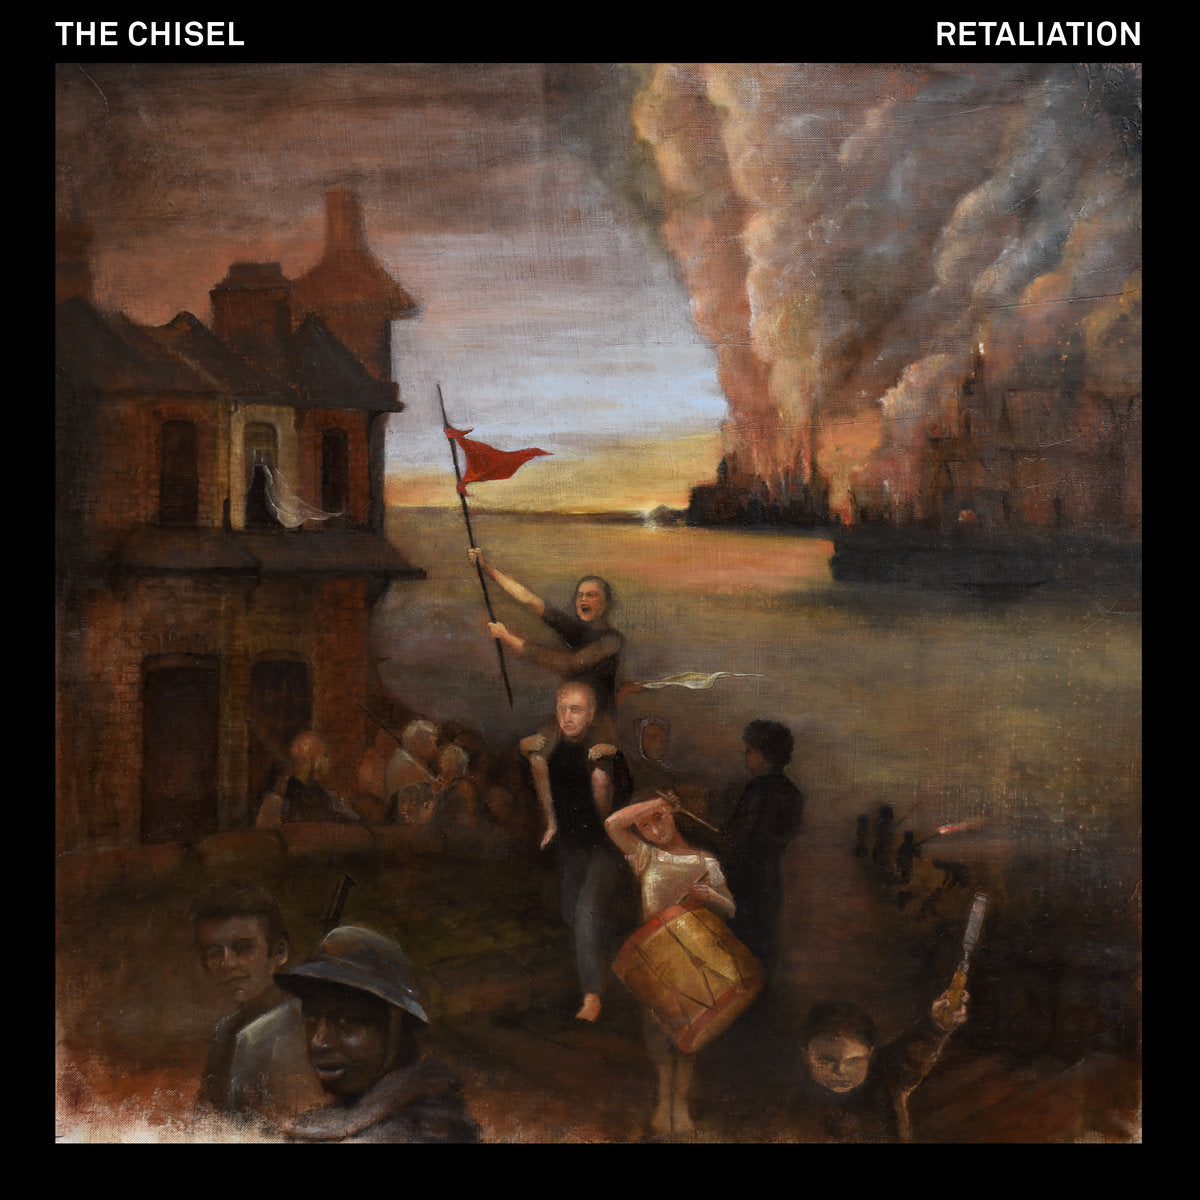 THE CHISEL - RETALIATION Vinyl LP